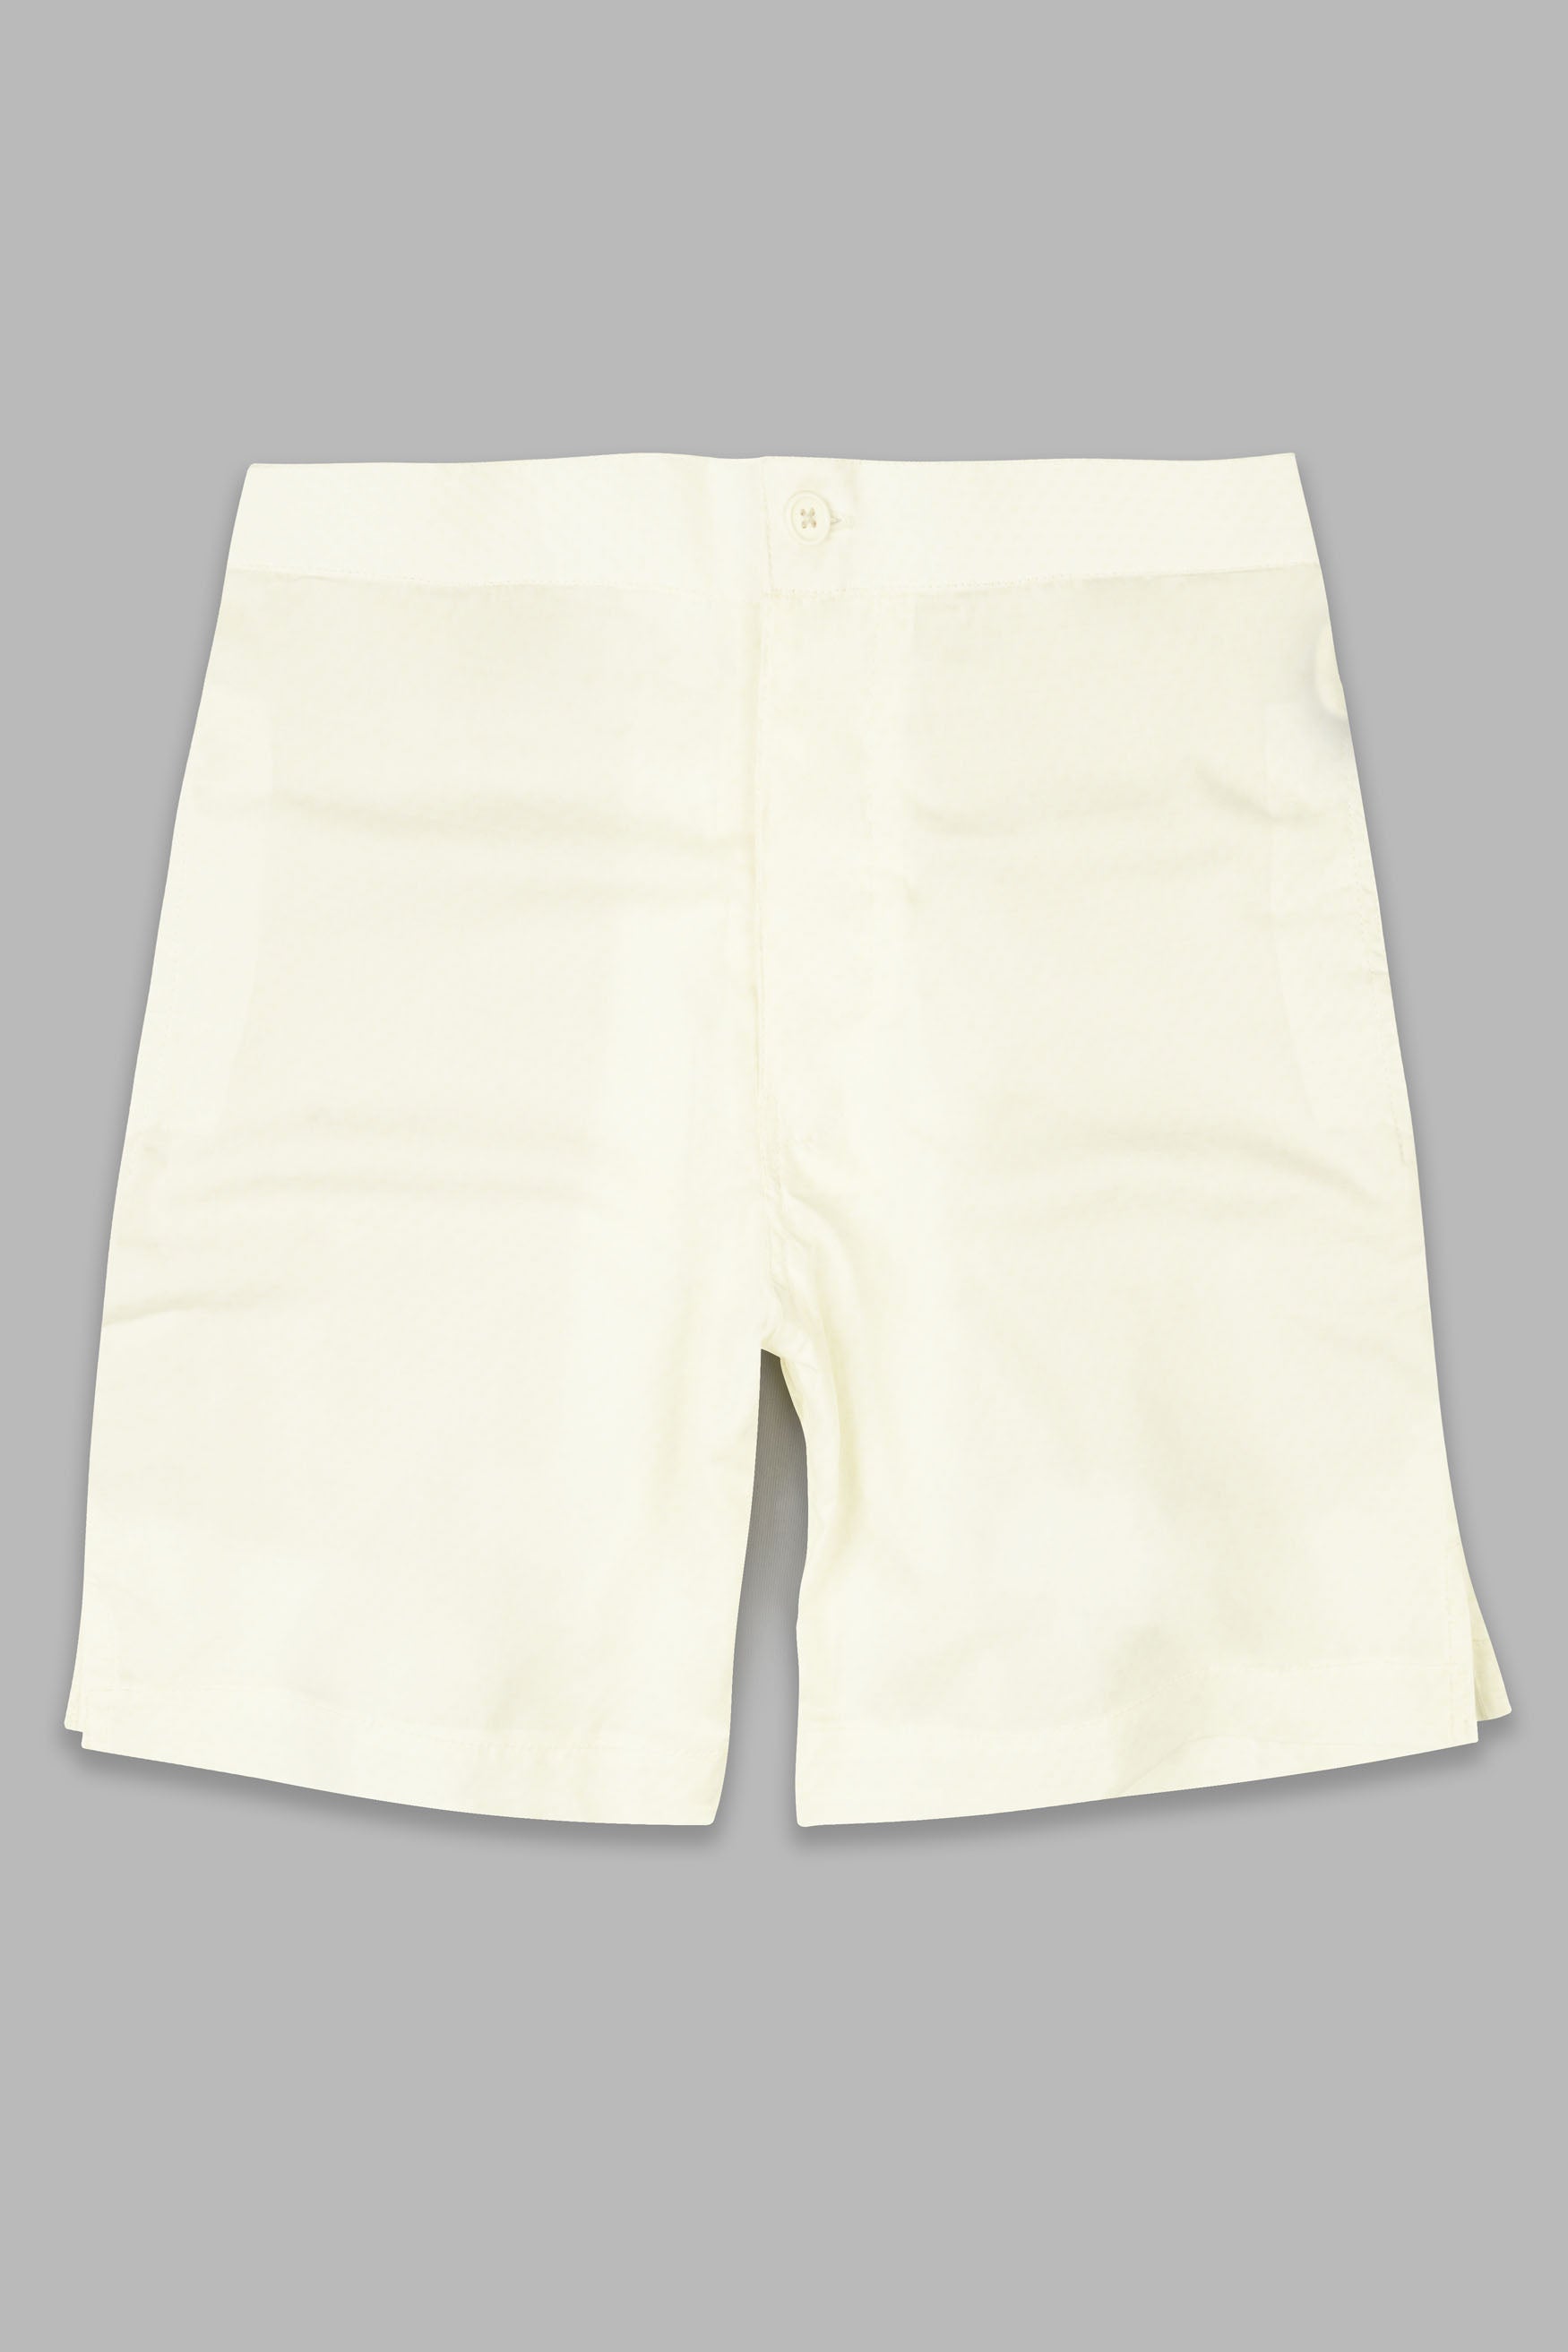 Merino Cream Premium Cotton Shorts SR346-28,  SR346-30,  SR346-32,  SR346-34,  SR346-36,  SR346-38,  SR346-40,  SR346-42,  SR346-44